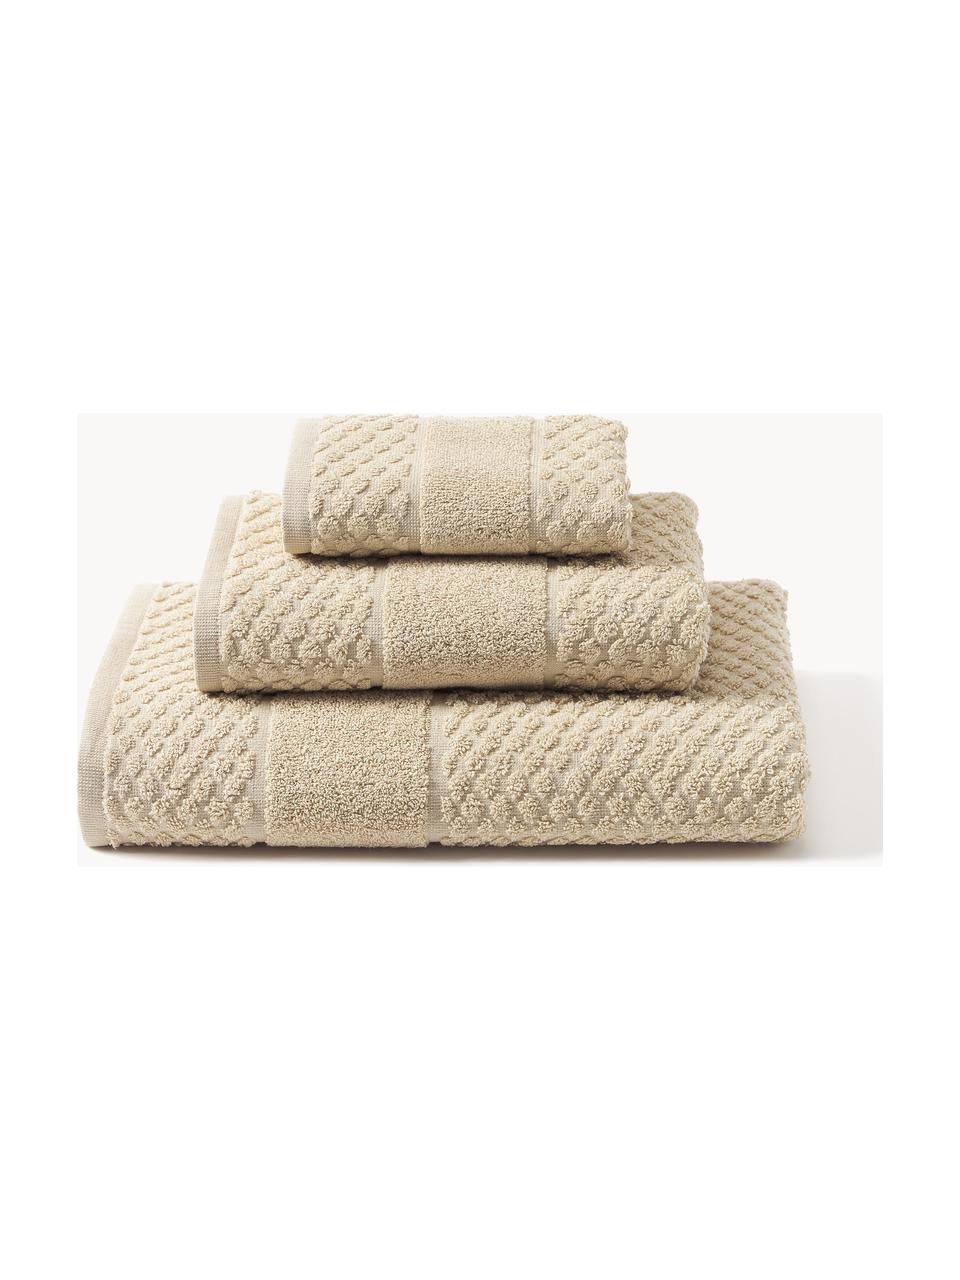 Handdoekenset Katharina met honingraatpatroon, in verschillende setgroottes, Beige, Set van 3 (gastendoekje, handdoekje en douchedoekje)